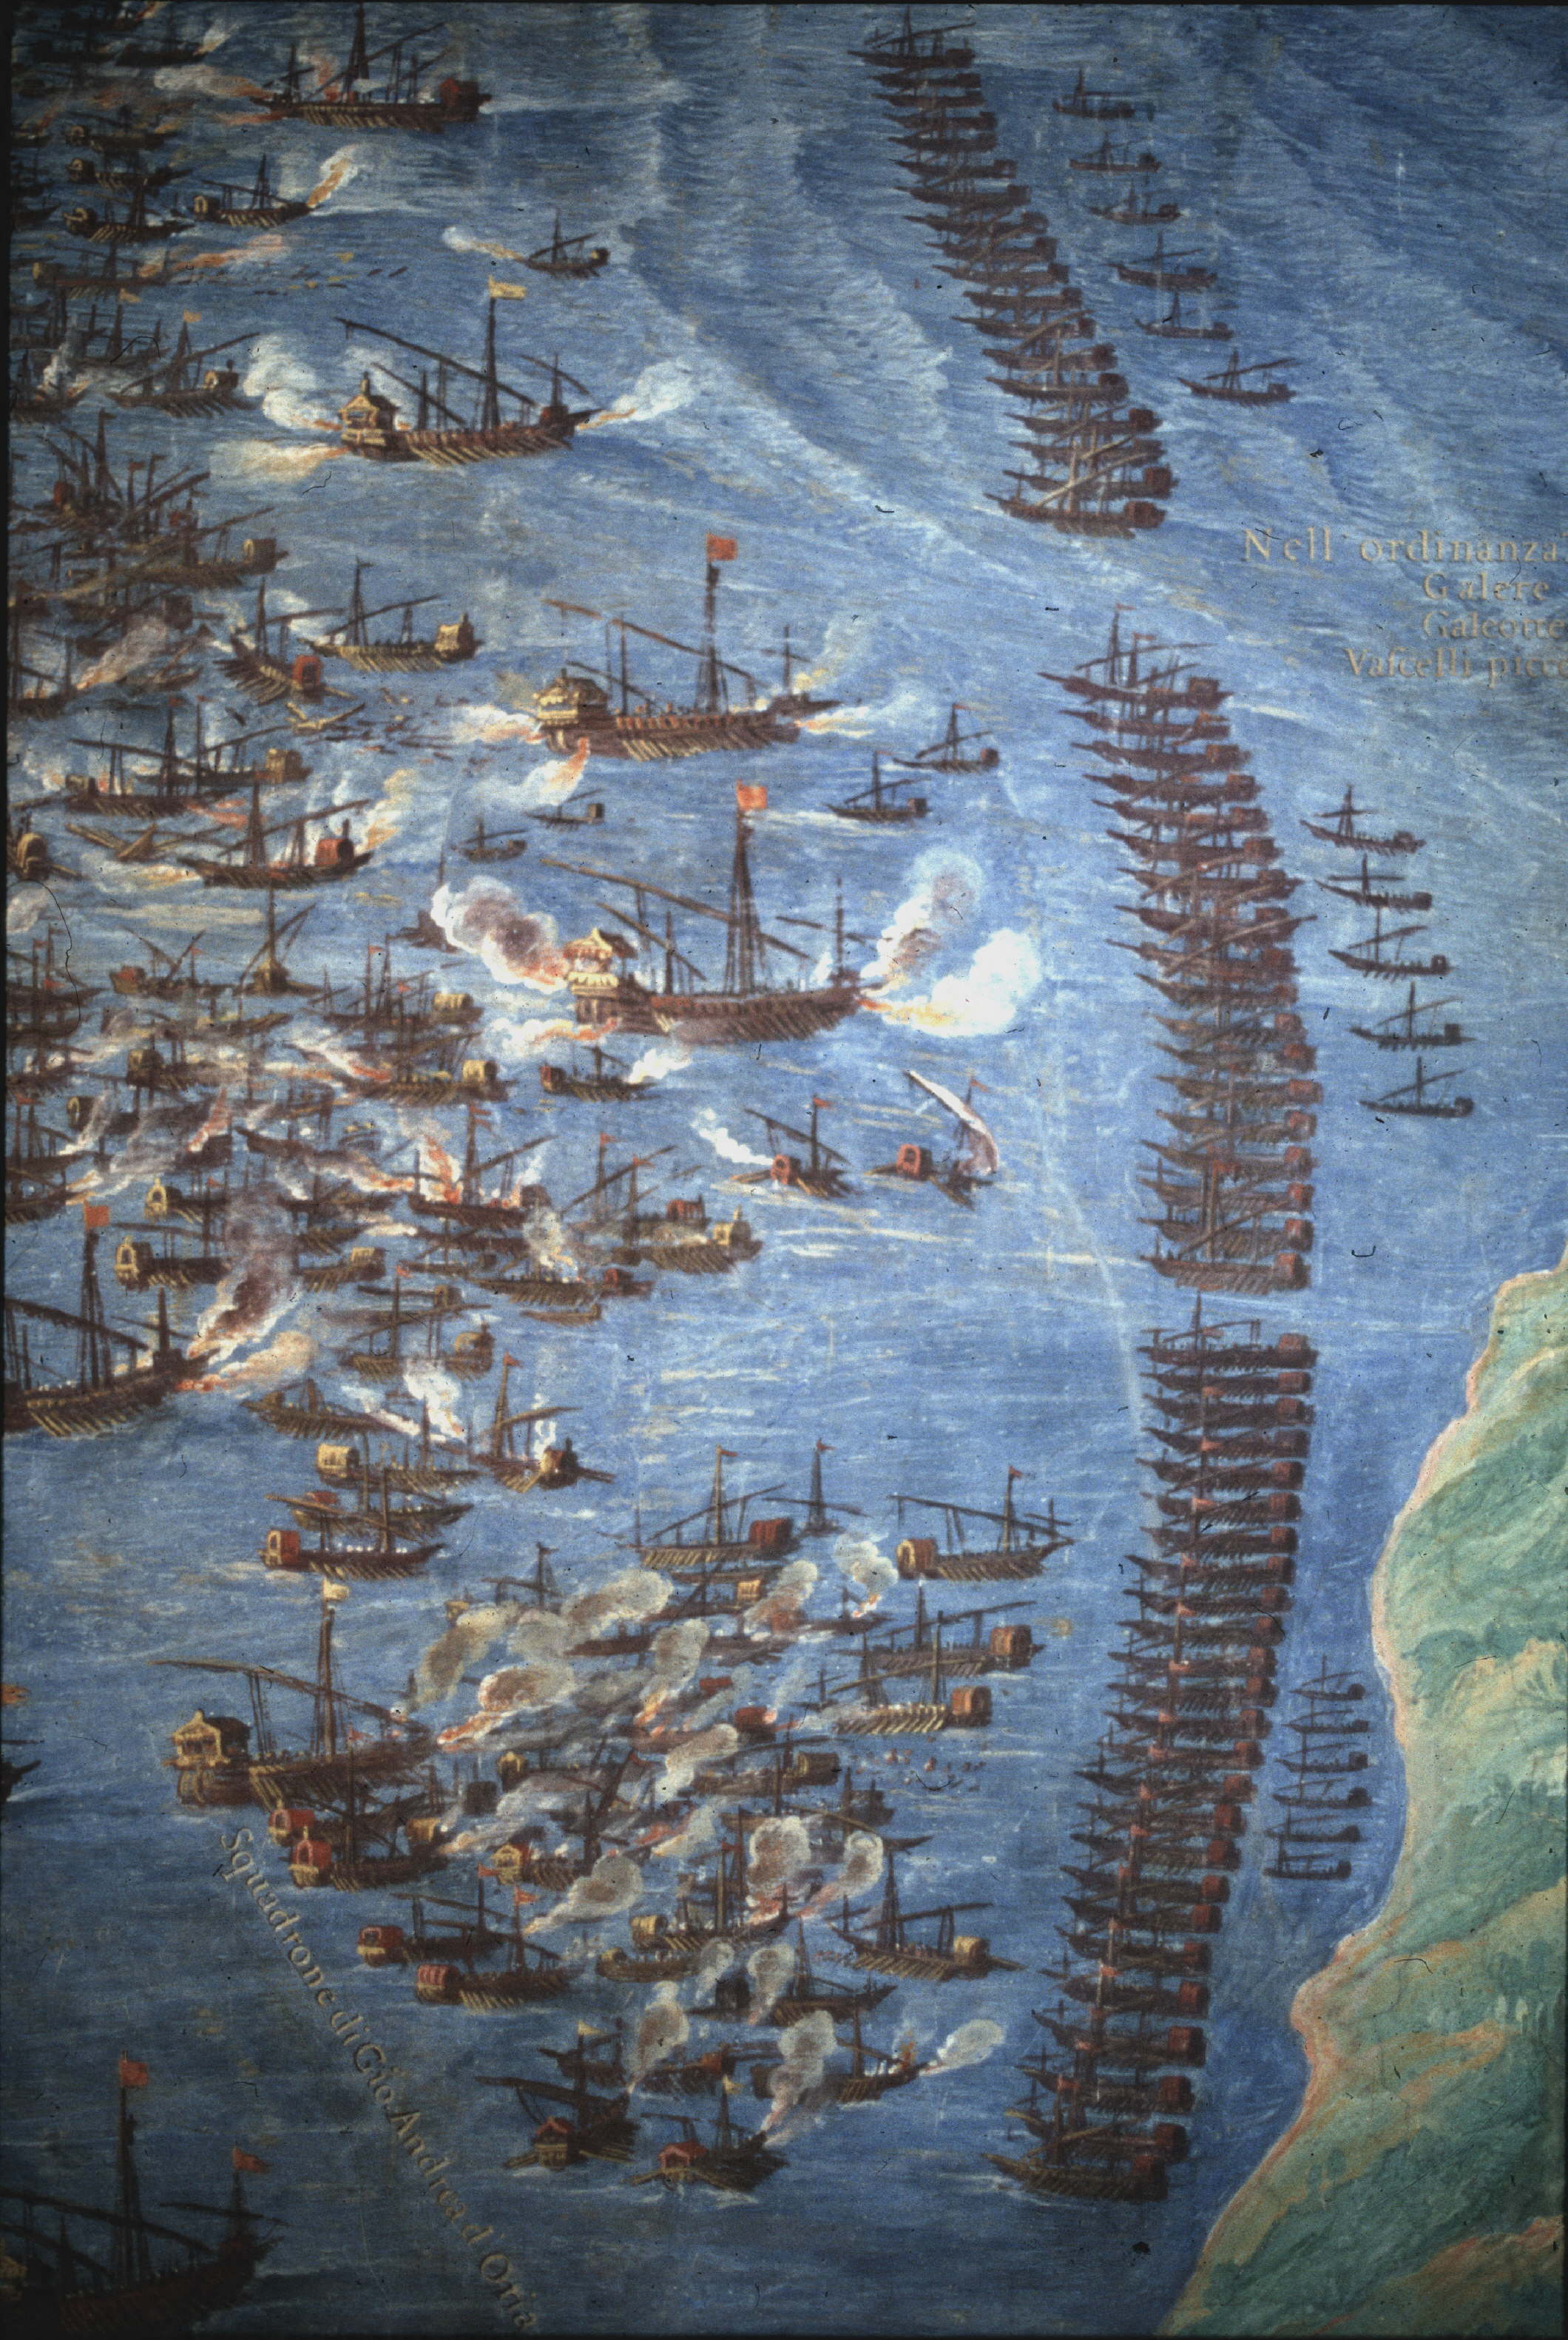 La battaglia di Lepanto in un affresco di Girolamo Danti conservato al Vaticano